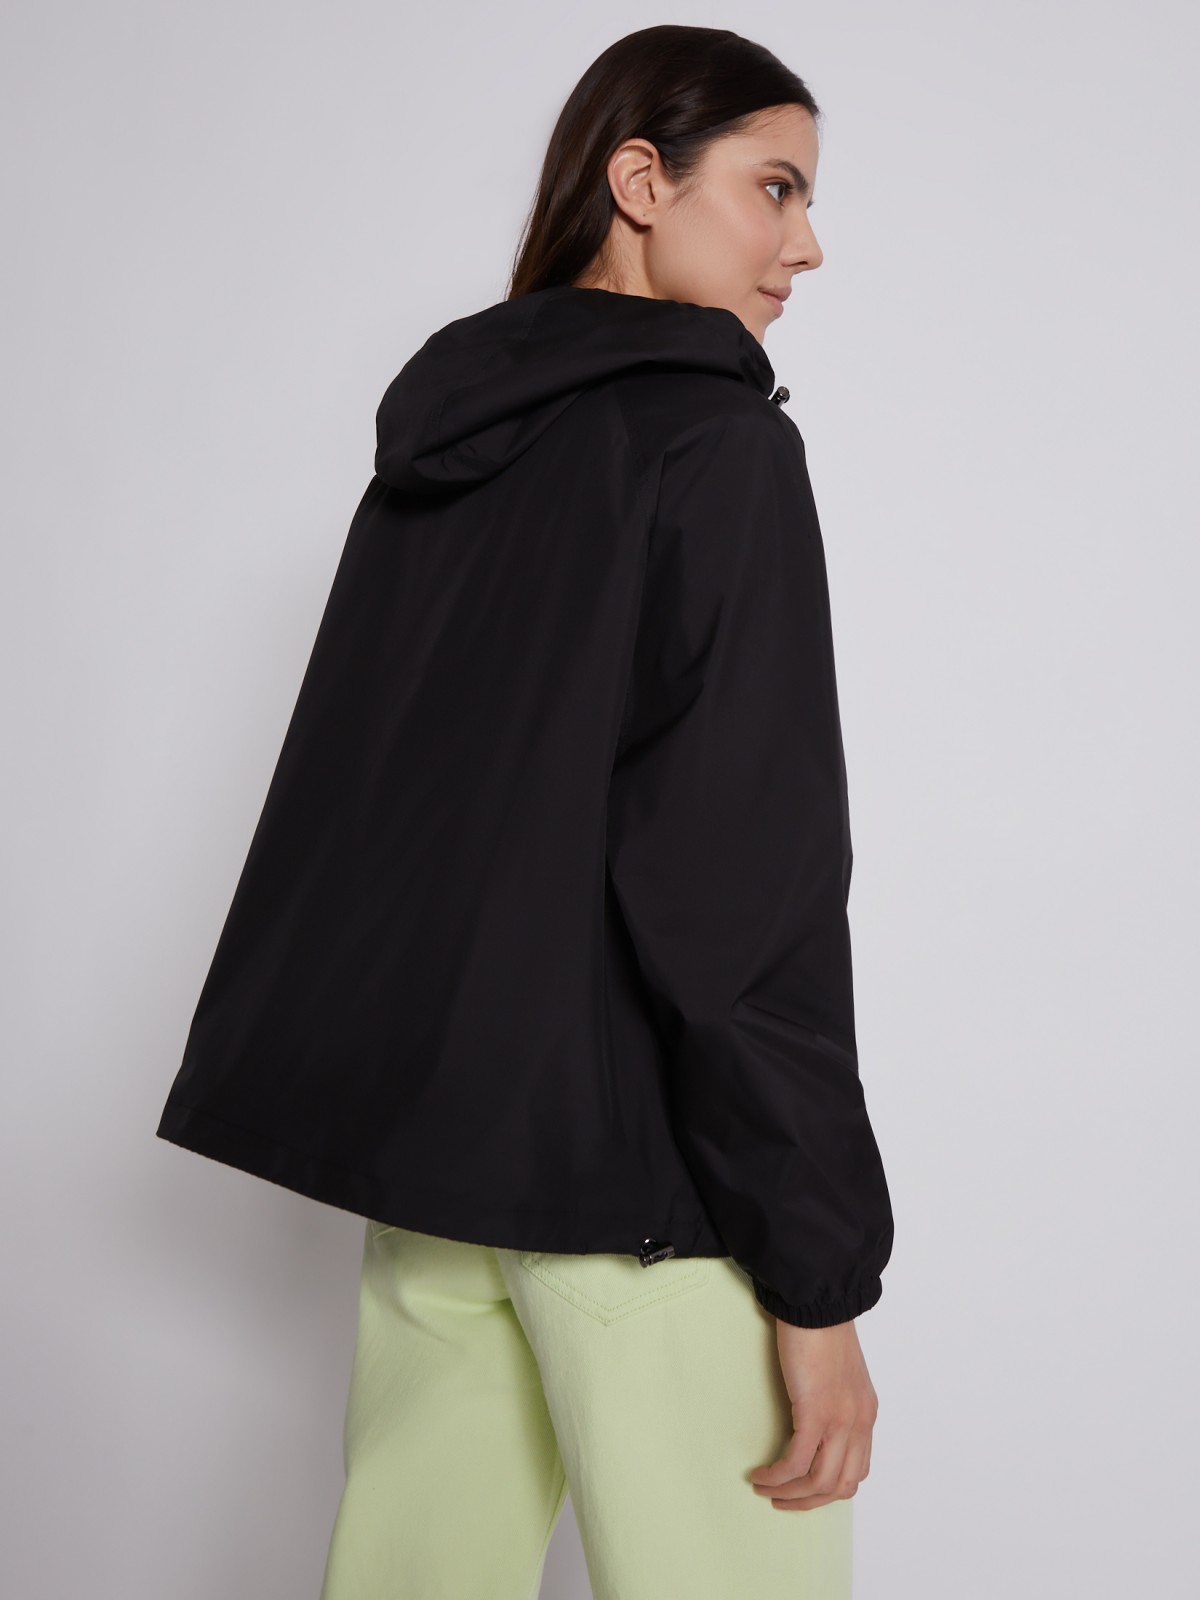 Куртка-ветровка с капюшоном zolla 023215612084, цвет черный, размер XS - фото 5